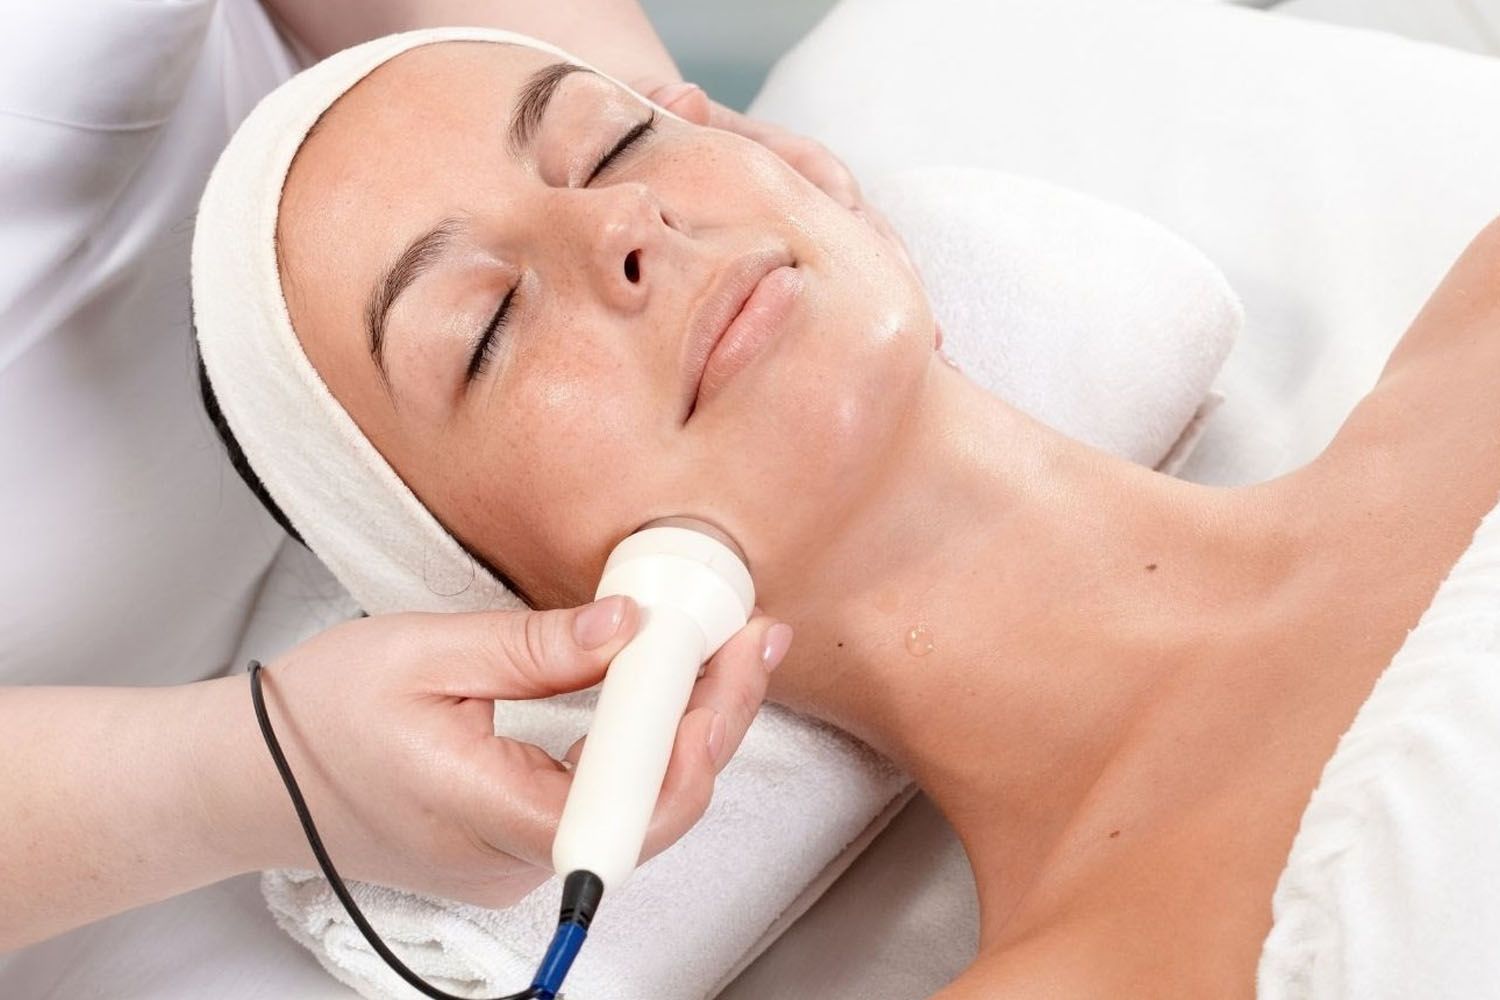 Una mujer se somete a un tratamiento estético para rejuvenecer su piel / EP